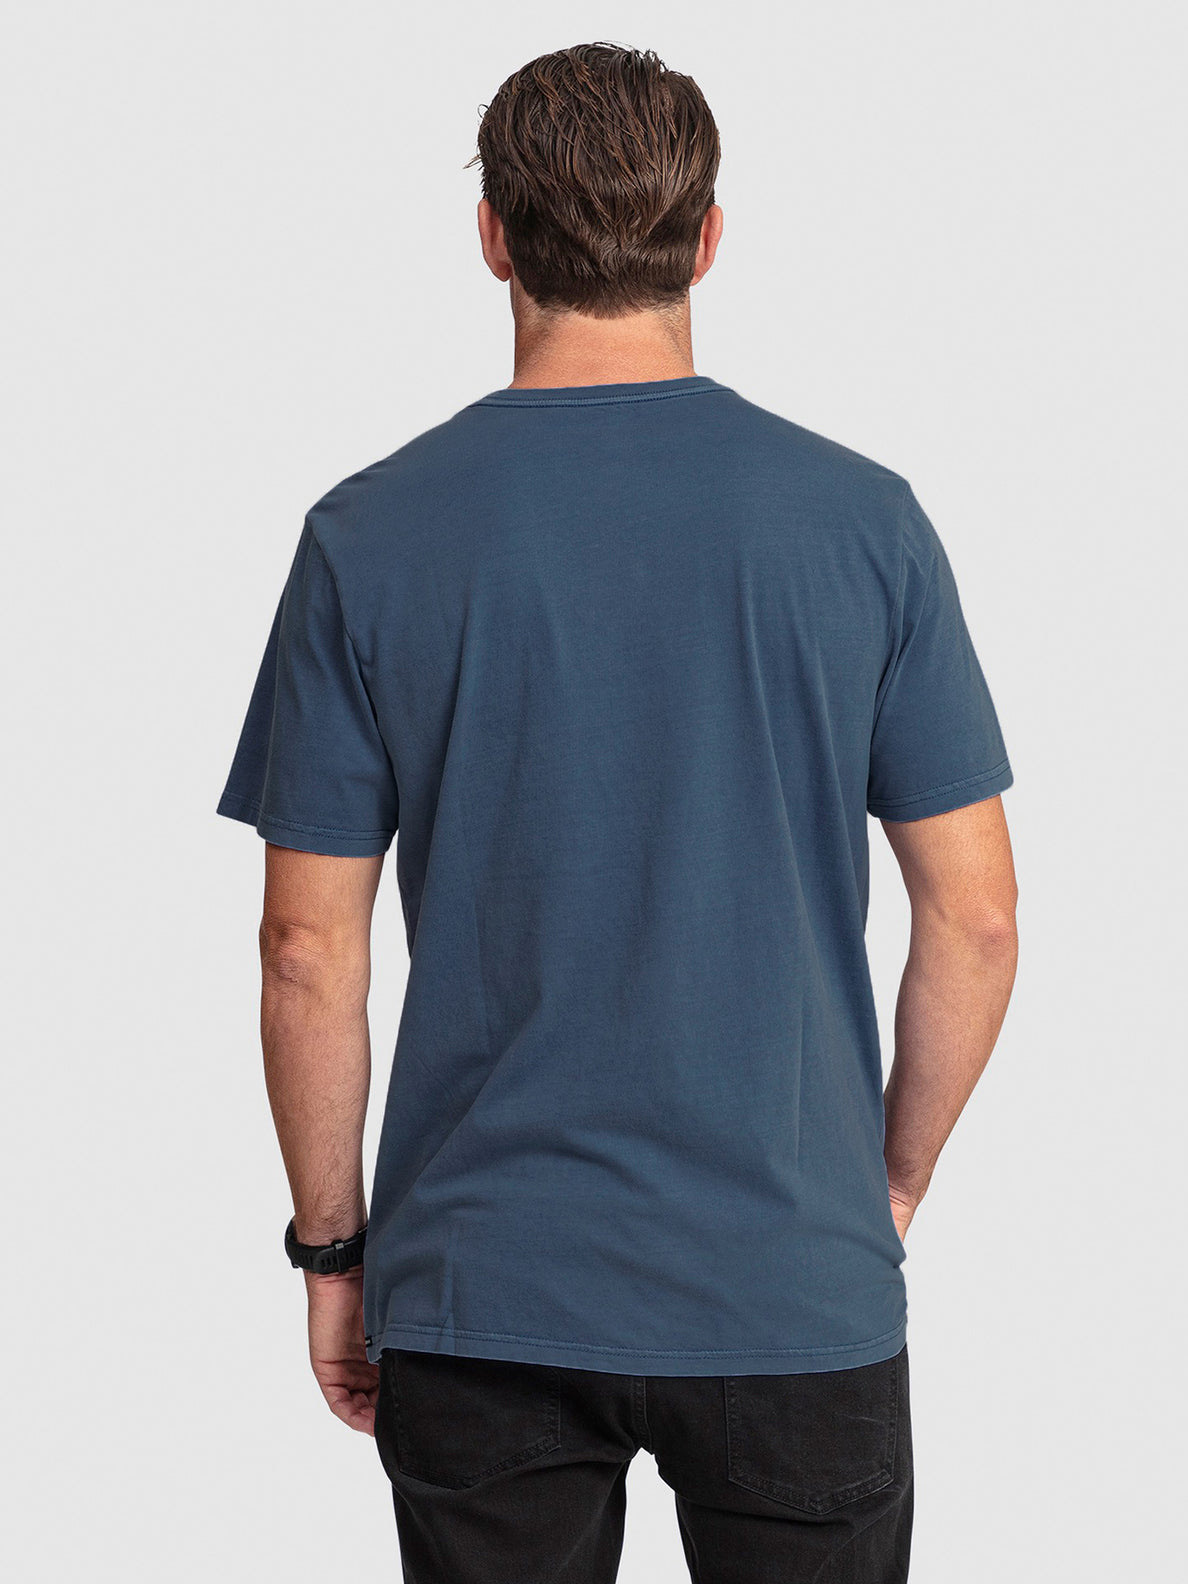 Substone Short Sleeve T-Shirt - Aged Indigo